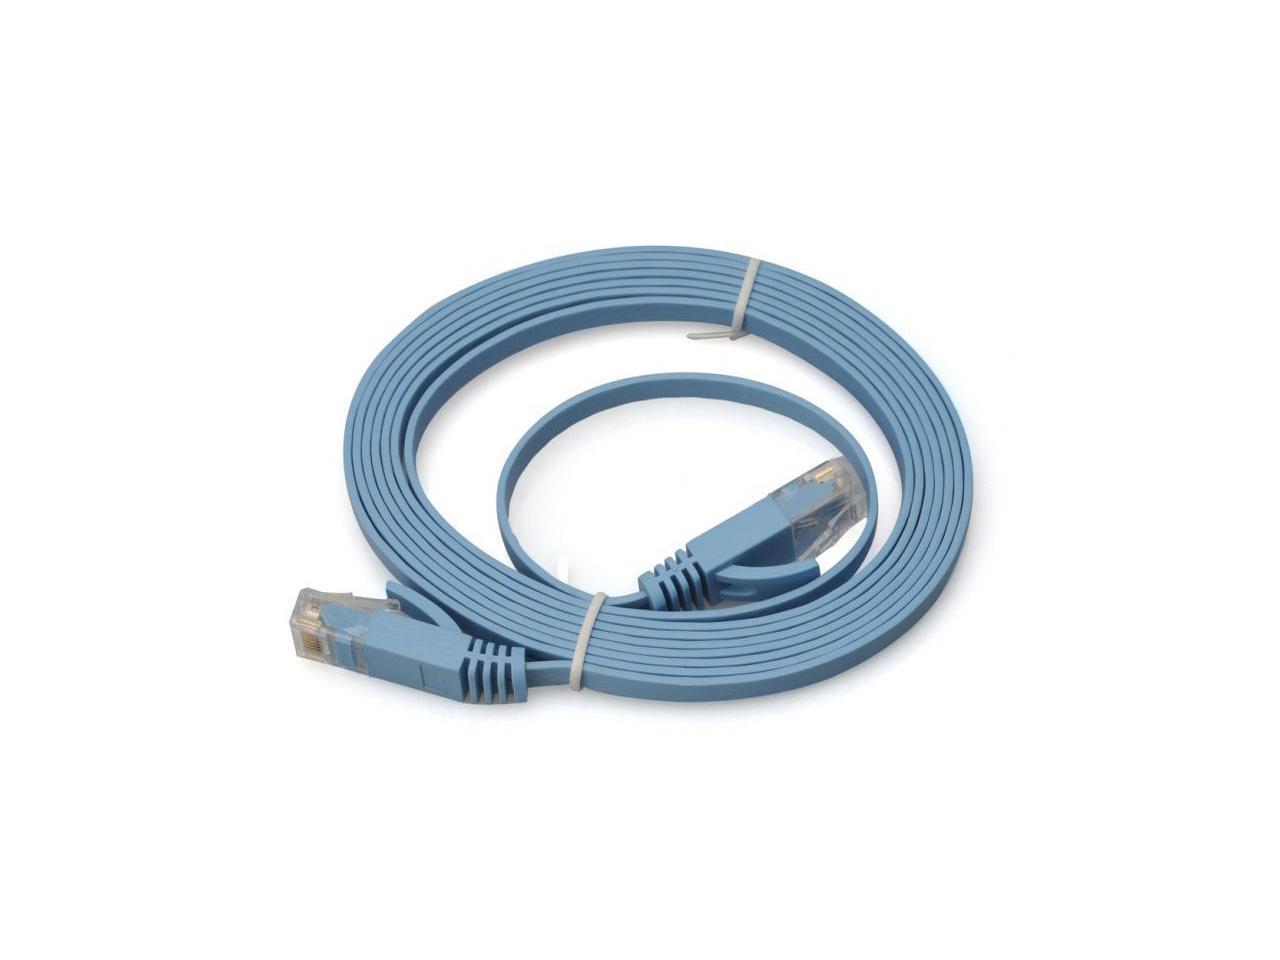 NEON Network Cable CAT6 RJ45 UTP Flat Snagless 15ft Blue. Model Cat6e-5m-LBLSN